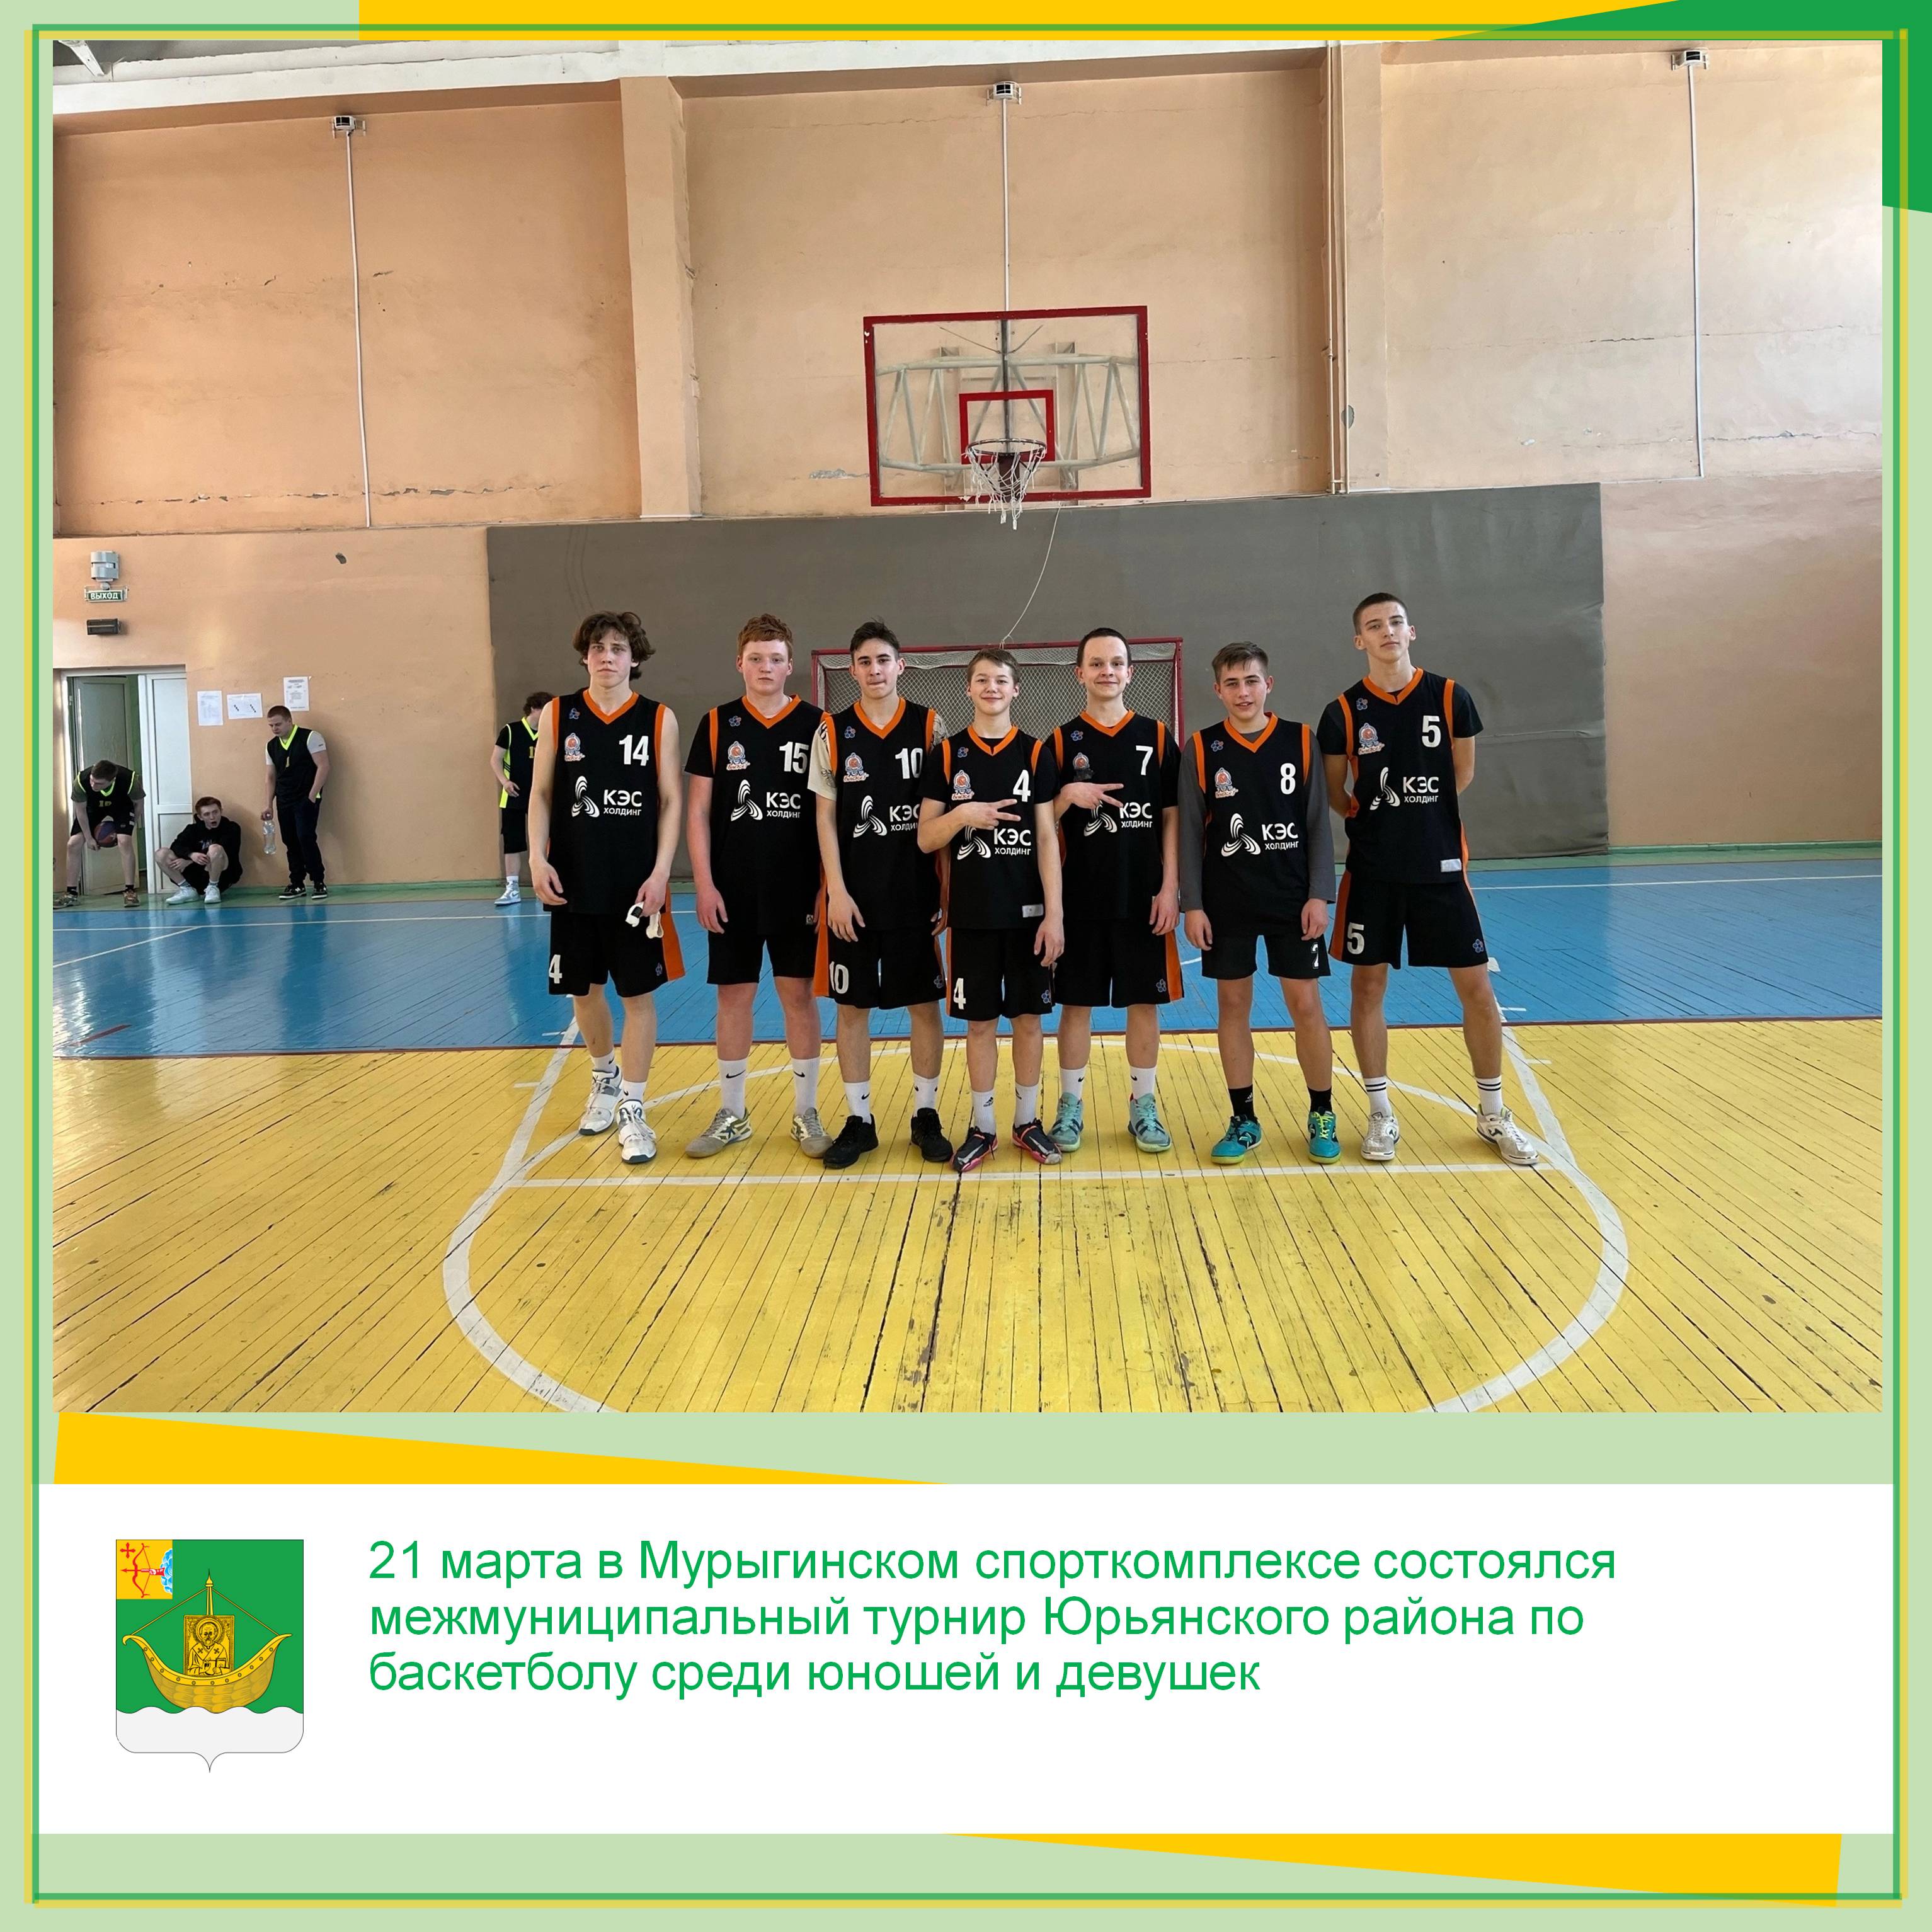 21 марта в Мурыгинском спорткомплексе состоялся межмуниципальный турнир Юрьянского района по баскетболу среди юношей и девушек.